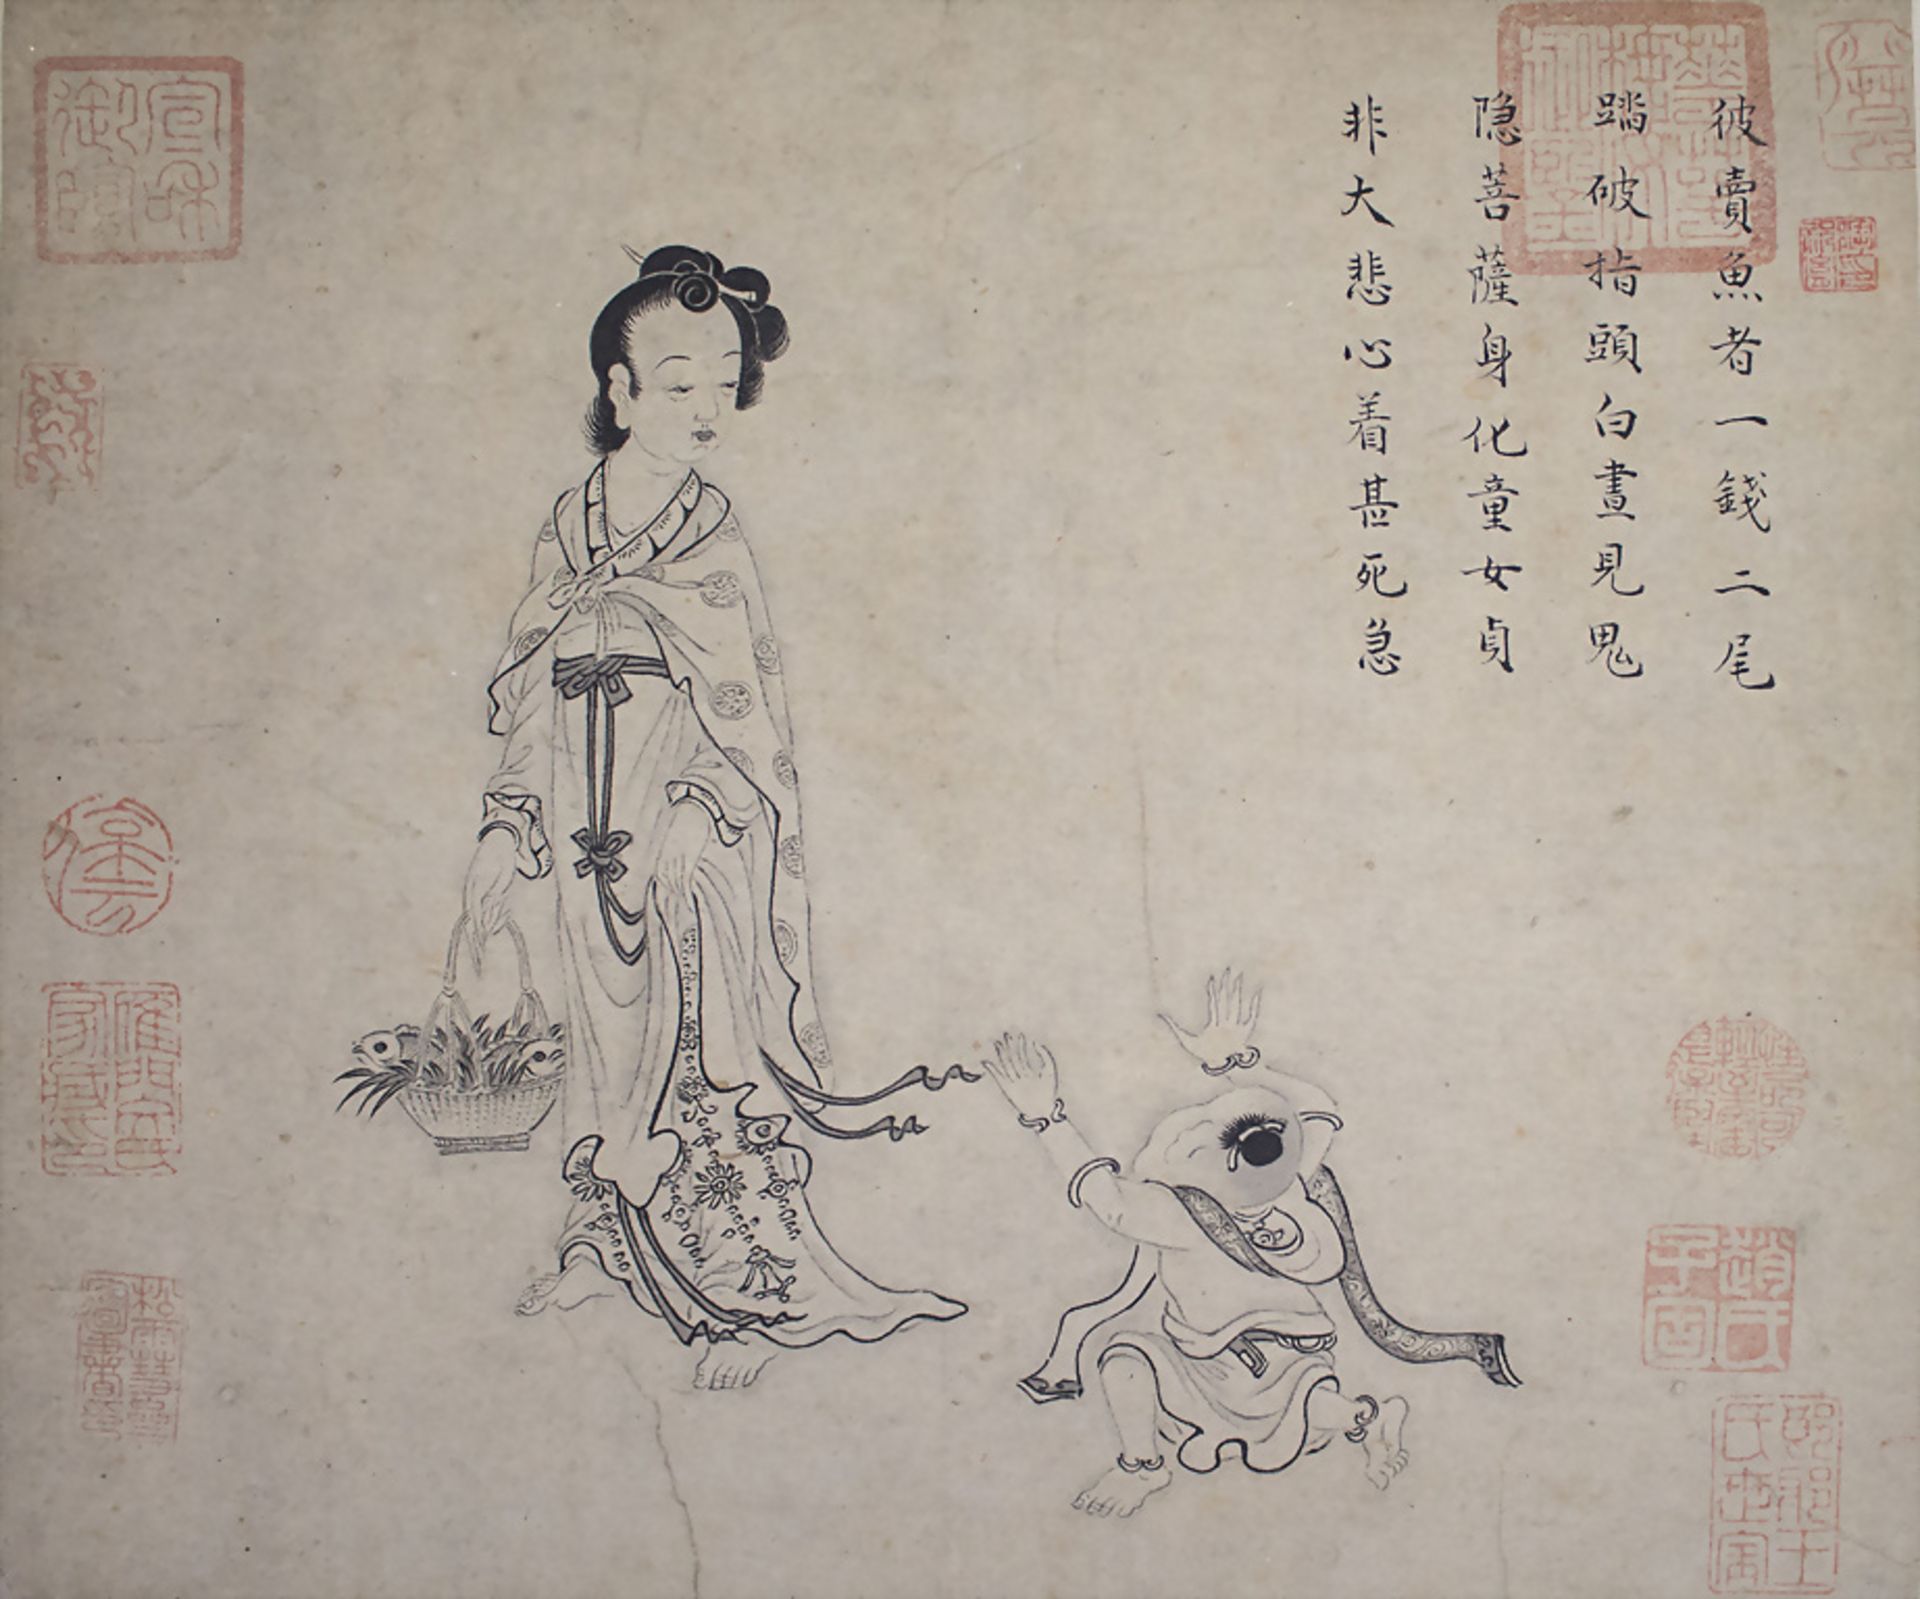 Mythologische Figurenstaffage / Mythological figural depictions, Qing Dynastie (1644-1911)